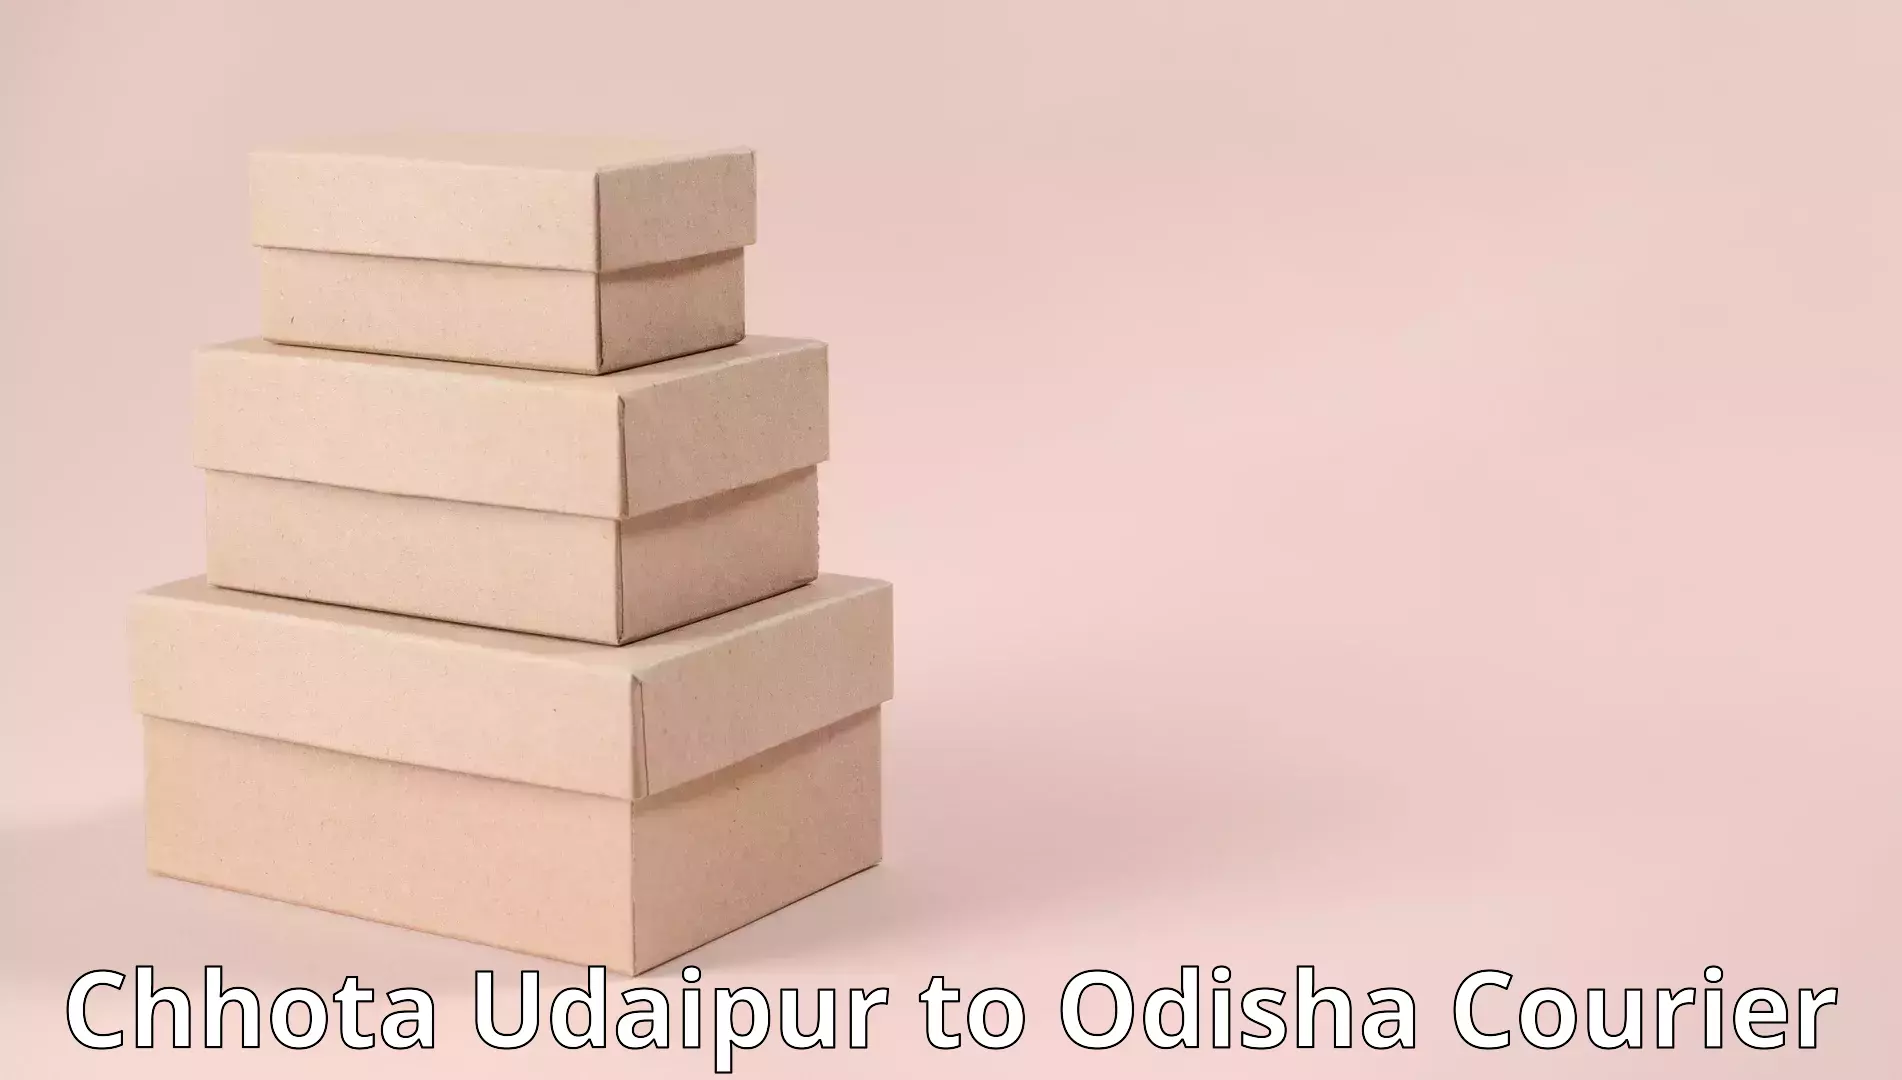 Professional furniture moving Chhota Udaipur to Turanga